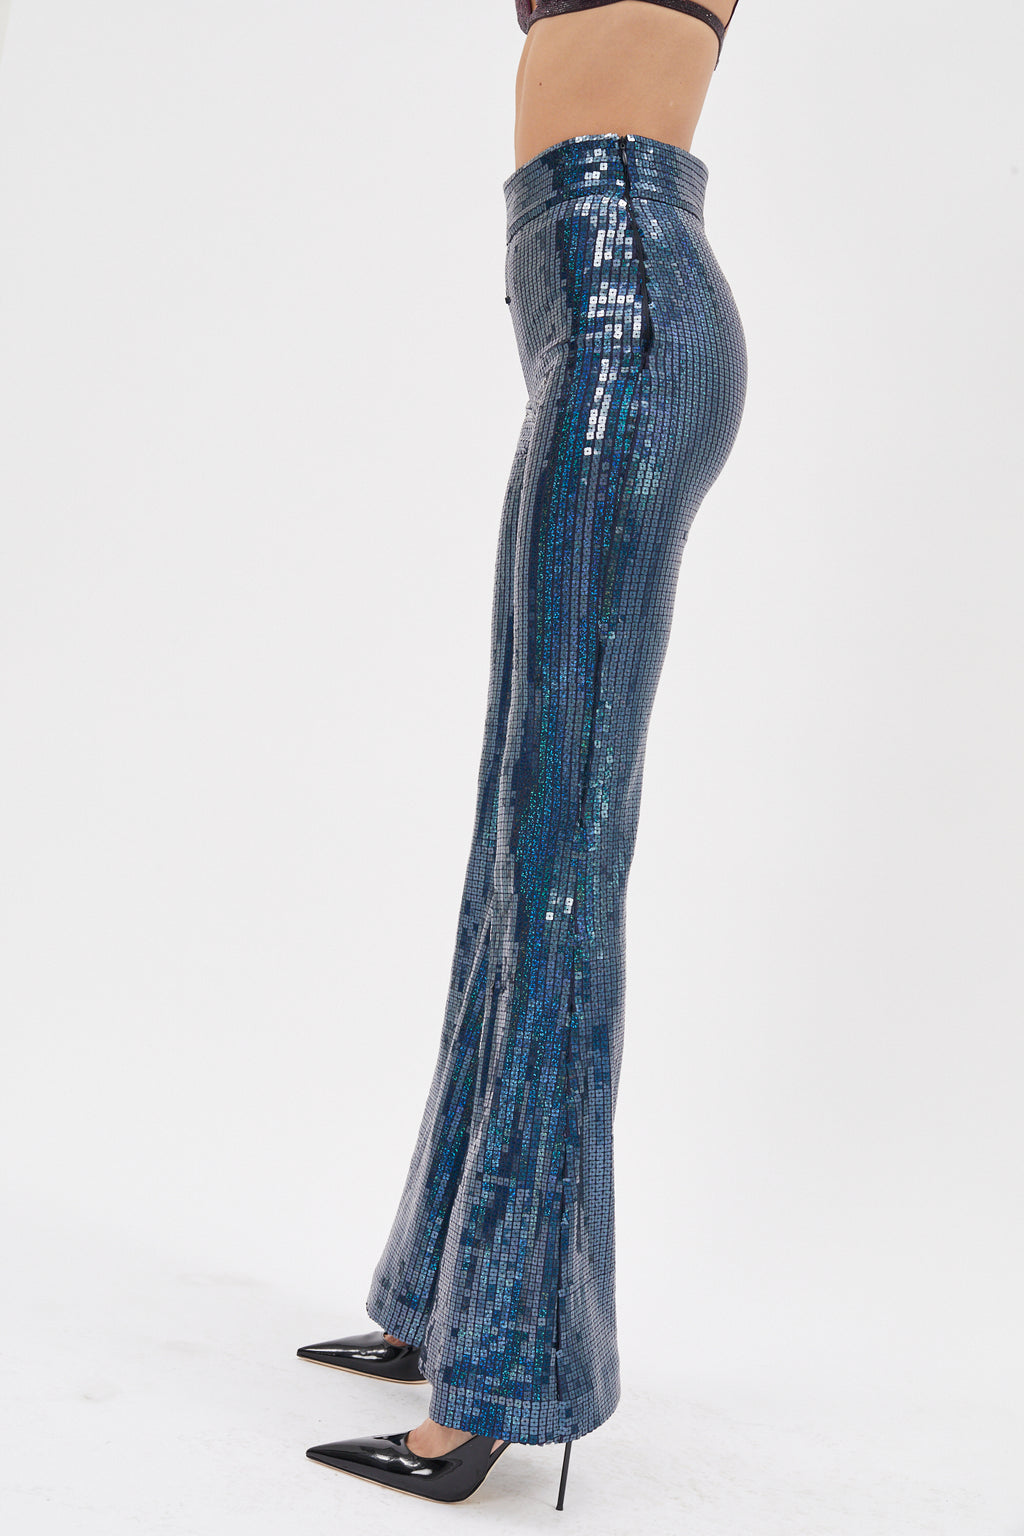 Colette Lapis Lazuli Pants